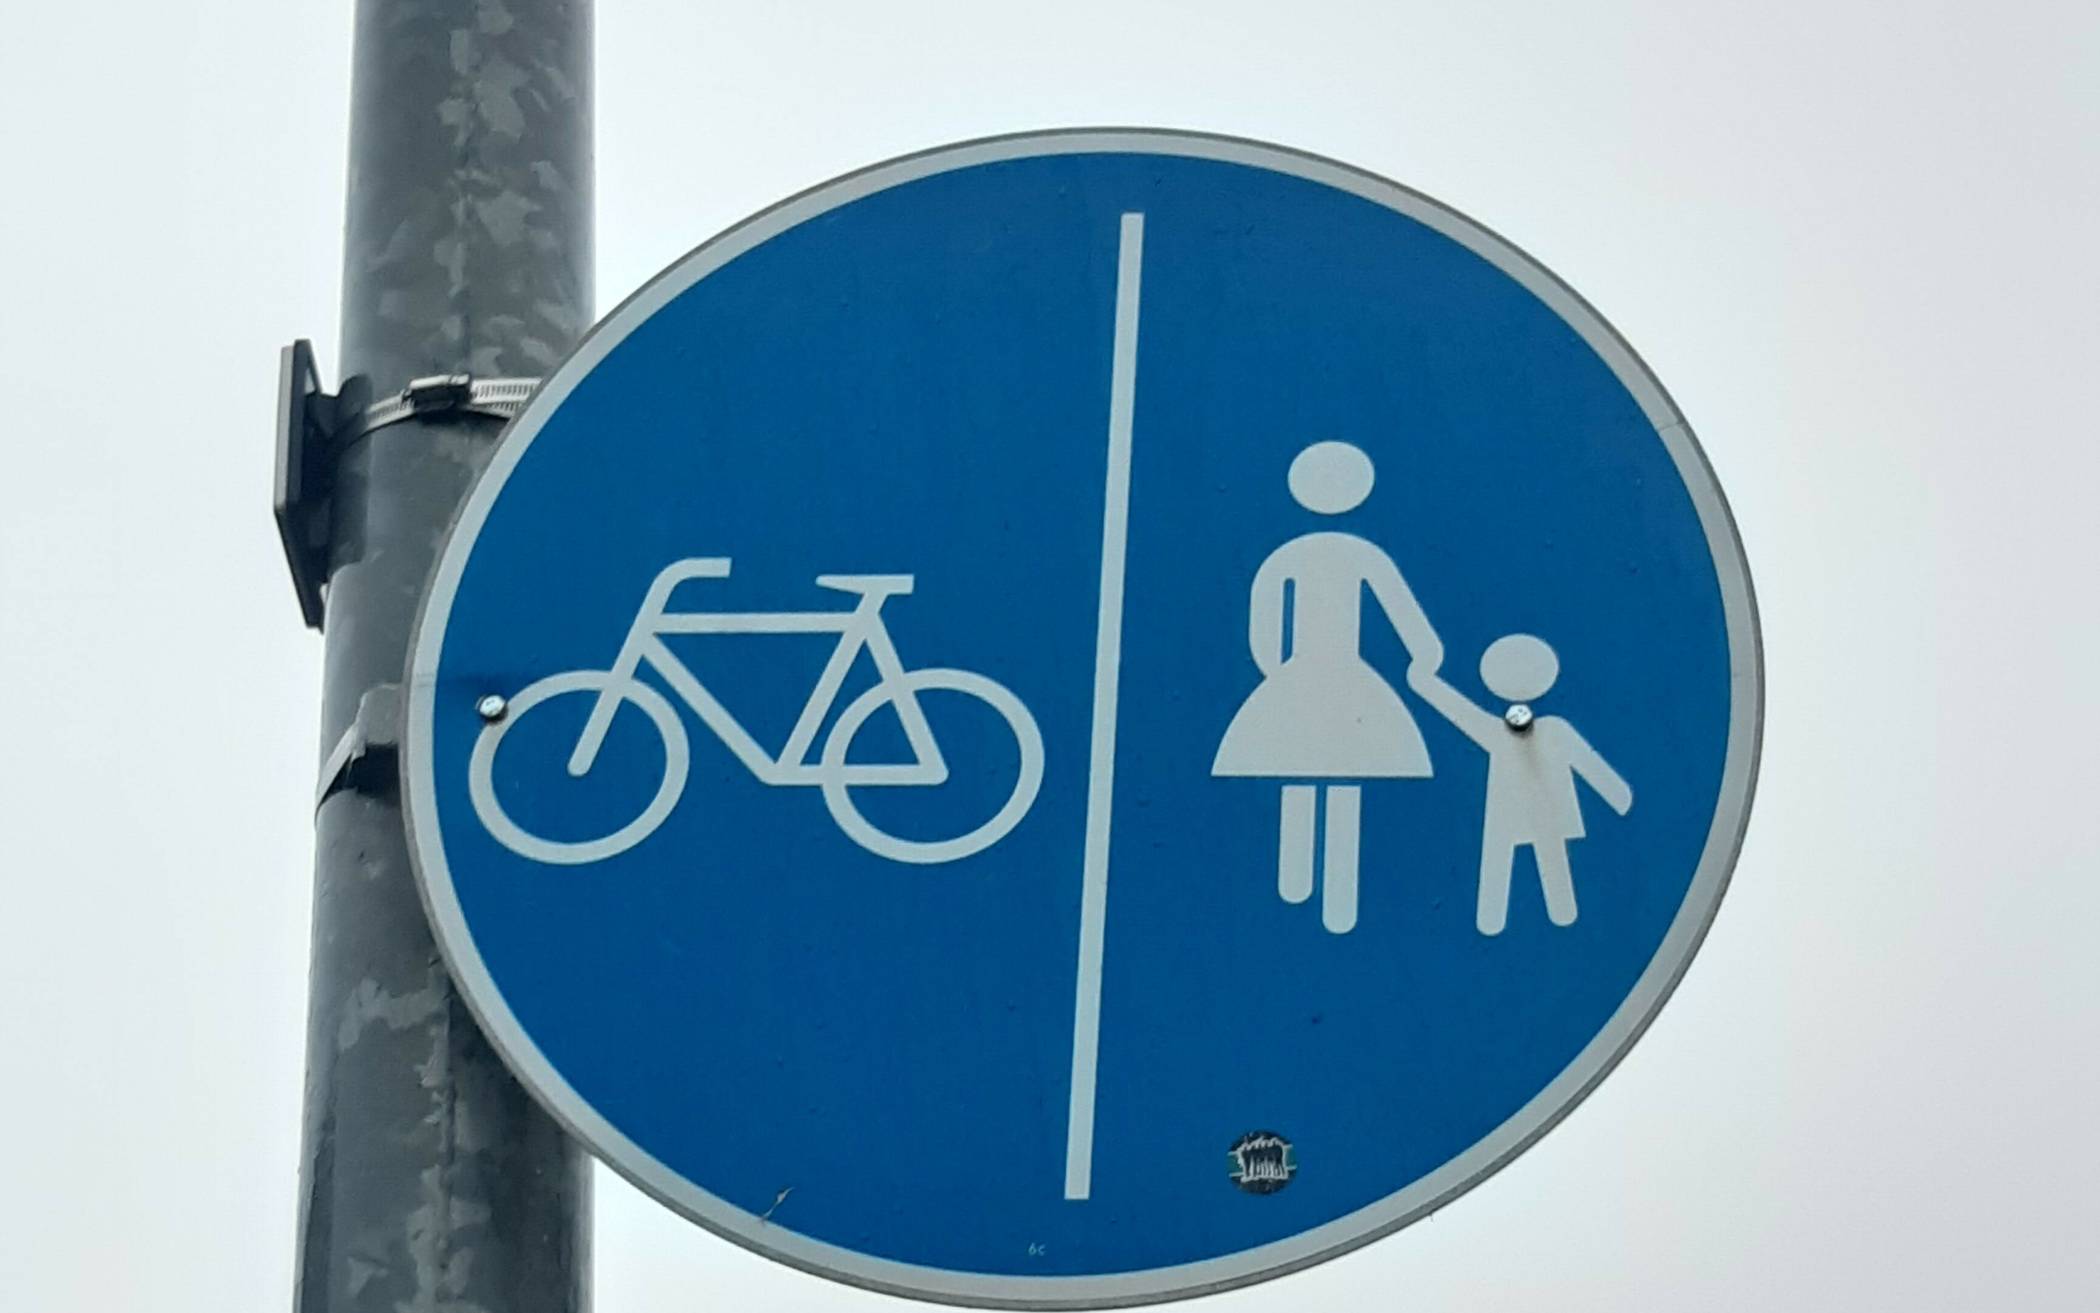 Stadt Jüchen will fußgänger- und fahrradfreundlicher werden